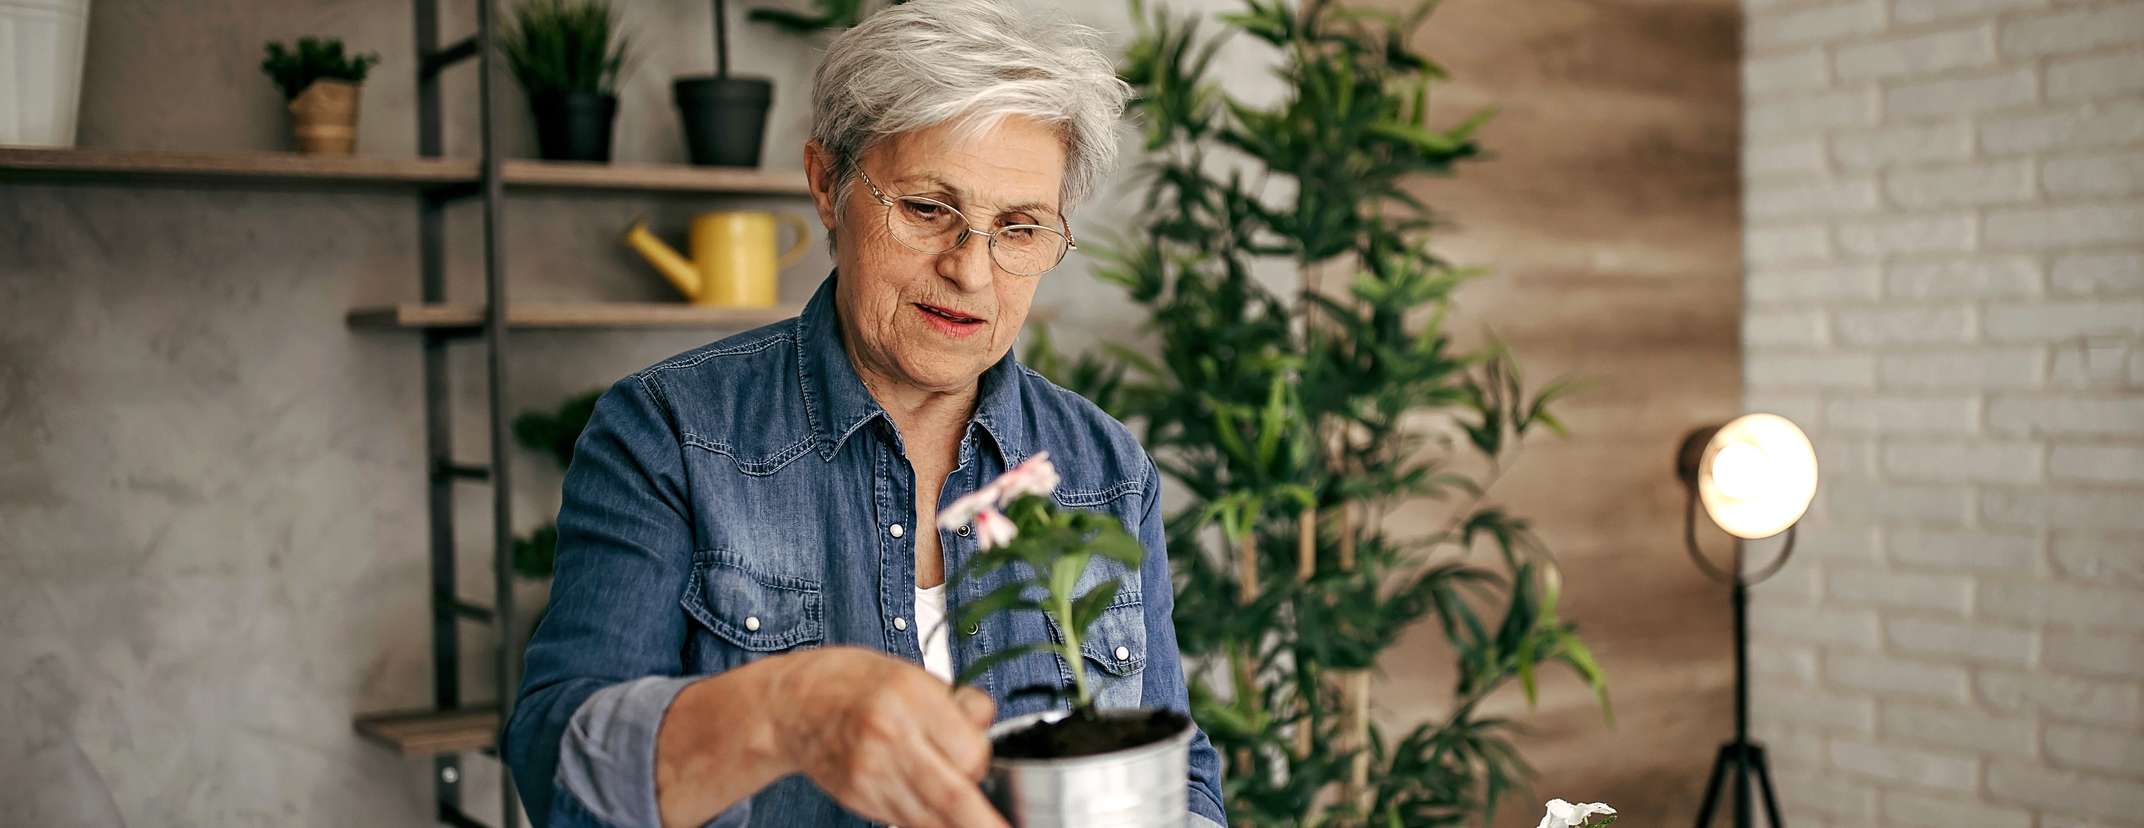 Allianz - Vorsorge - Rente aufstocken: Eine ältere Frau in einer Gärtnerei topft eine Blume um.